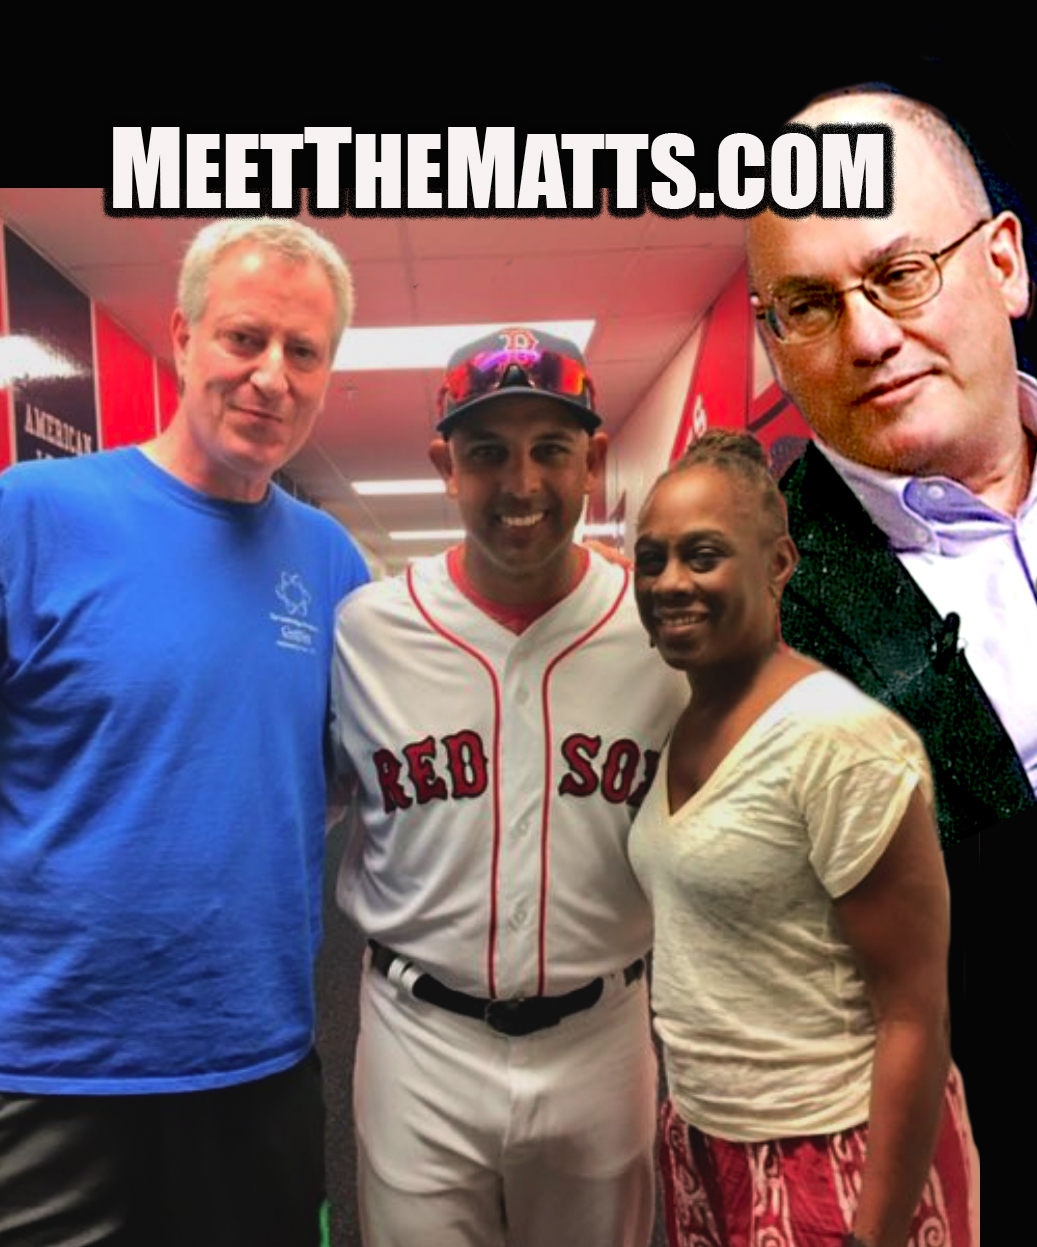 Meet_The_Matts, Steve_Cohen, Mets, Bill de Blasio, Trevor_Herrick